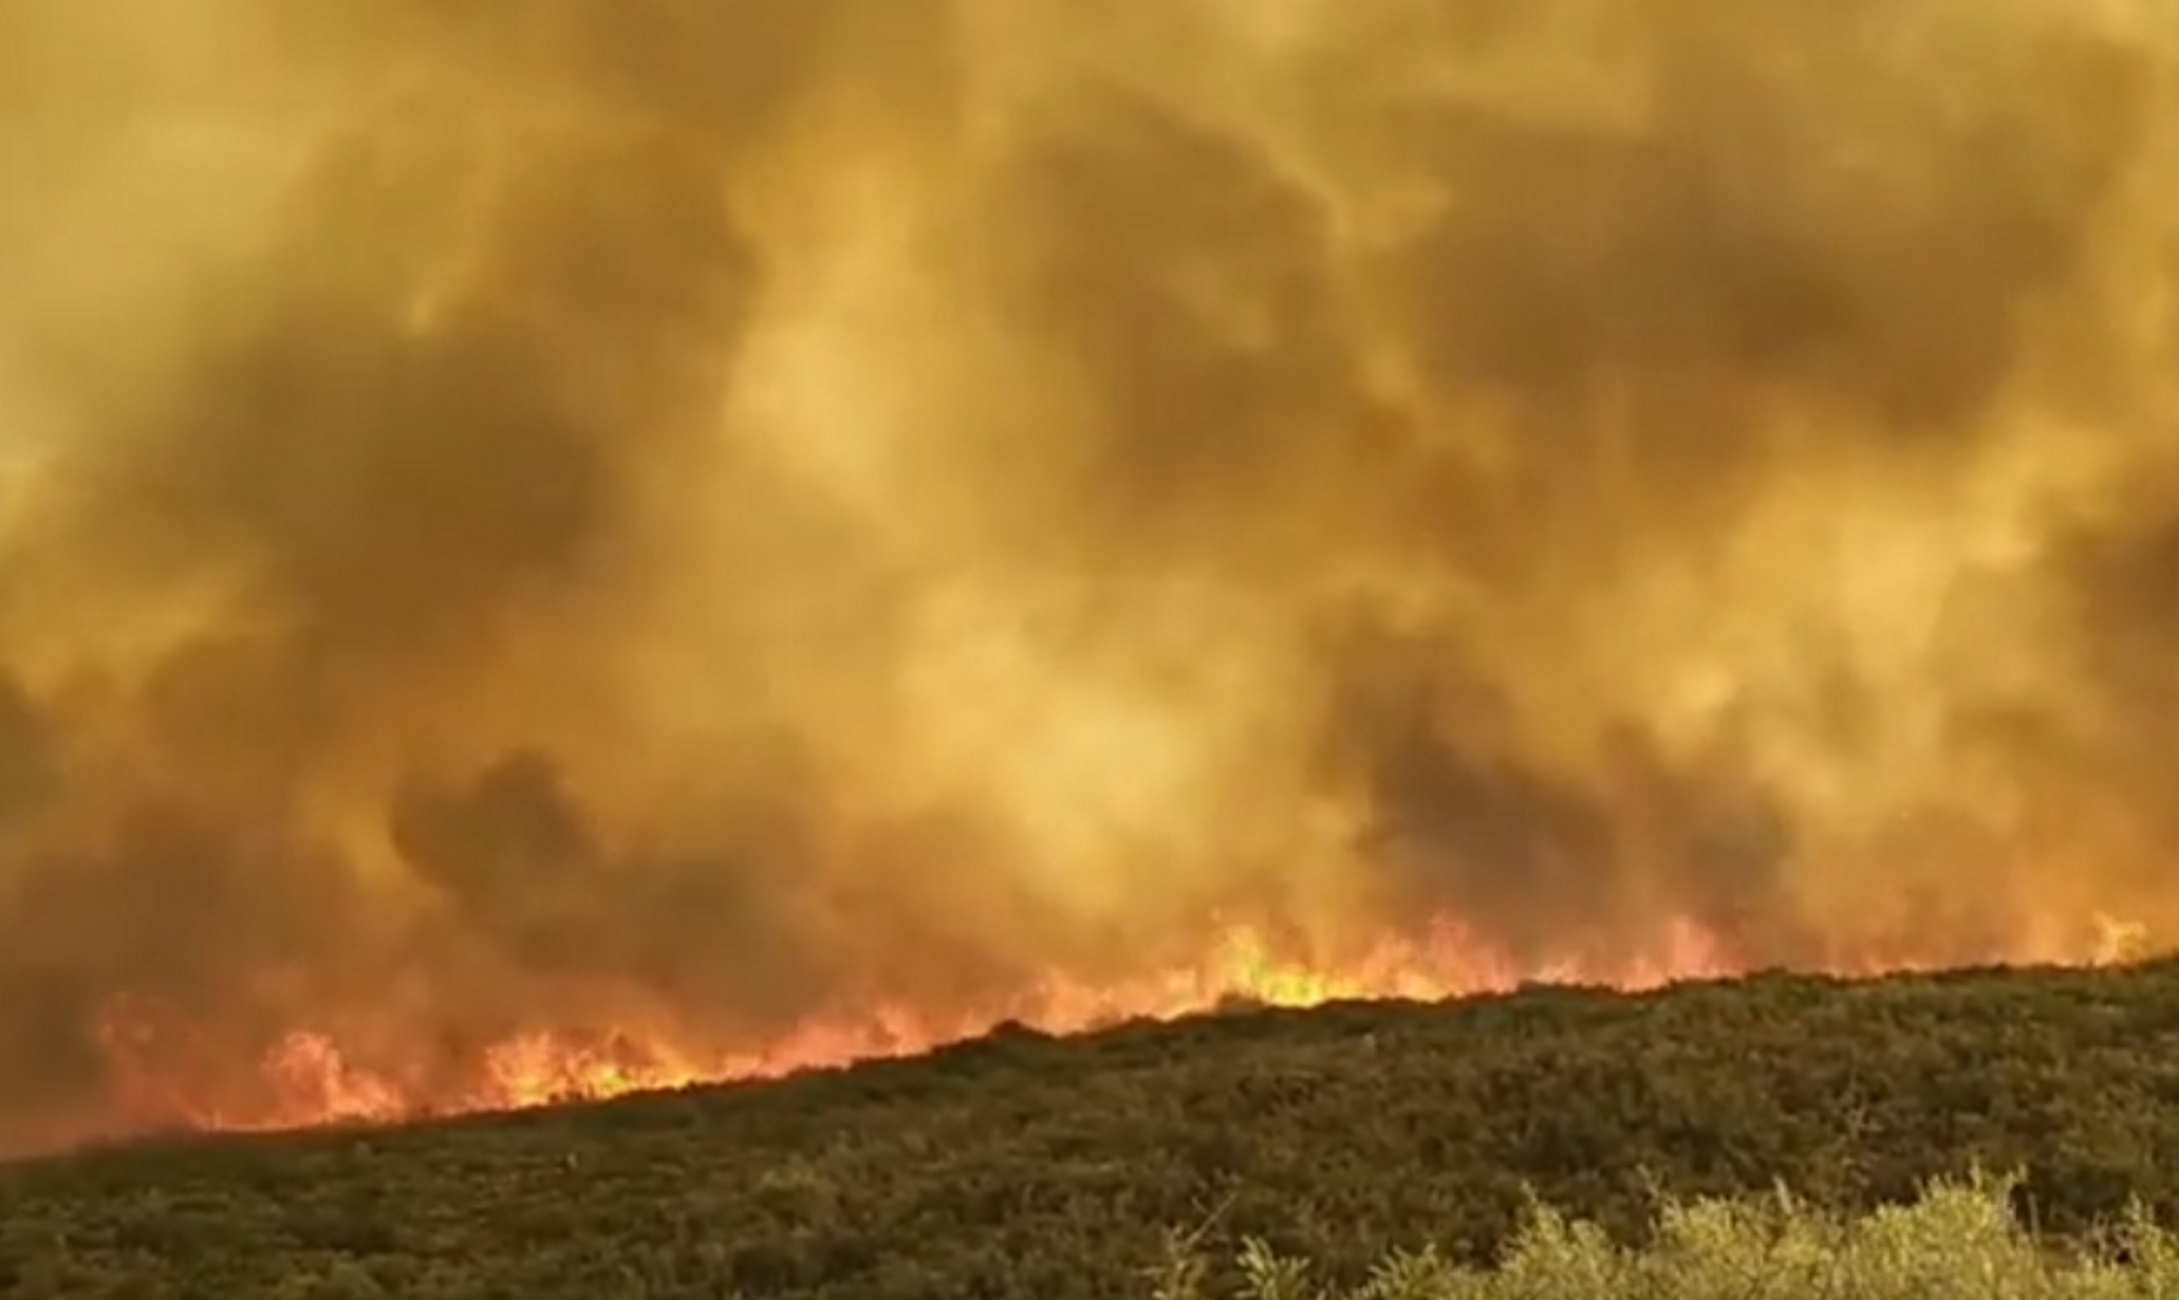 Λακωνία: Καθηλώνουν οι νέες εικόνες από τη μεγάλη φωτιά στη Μάνη! Εκκενώθηκαν οικισμοί (Βίντεο)